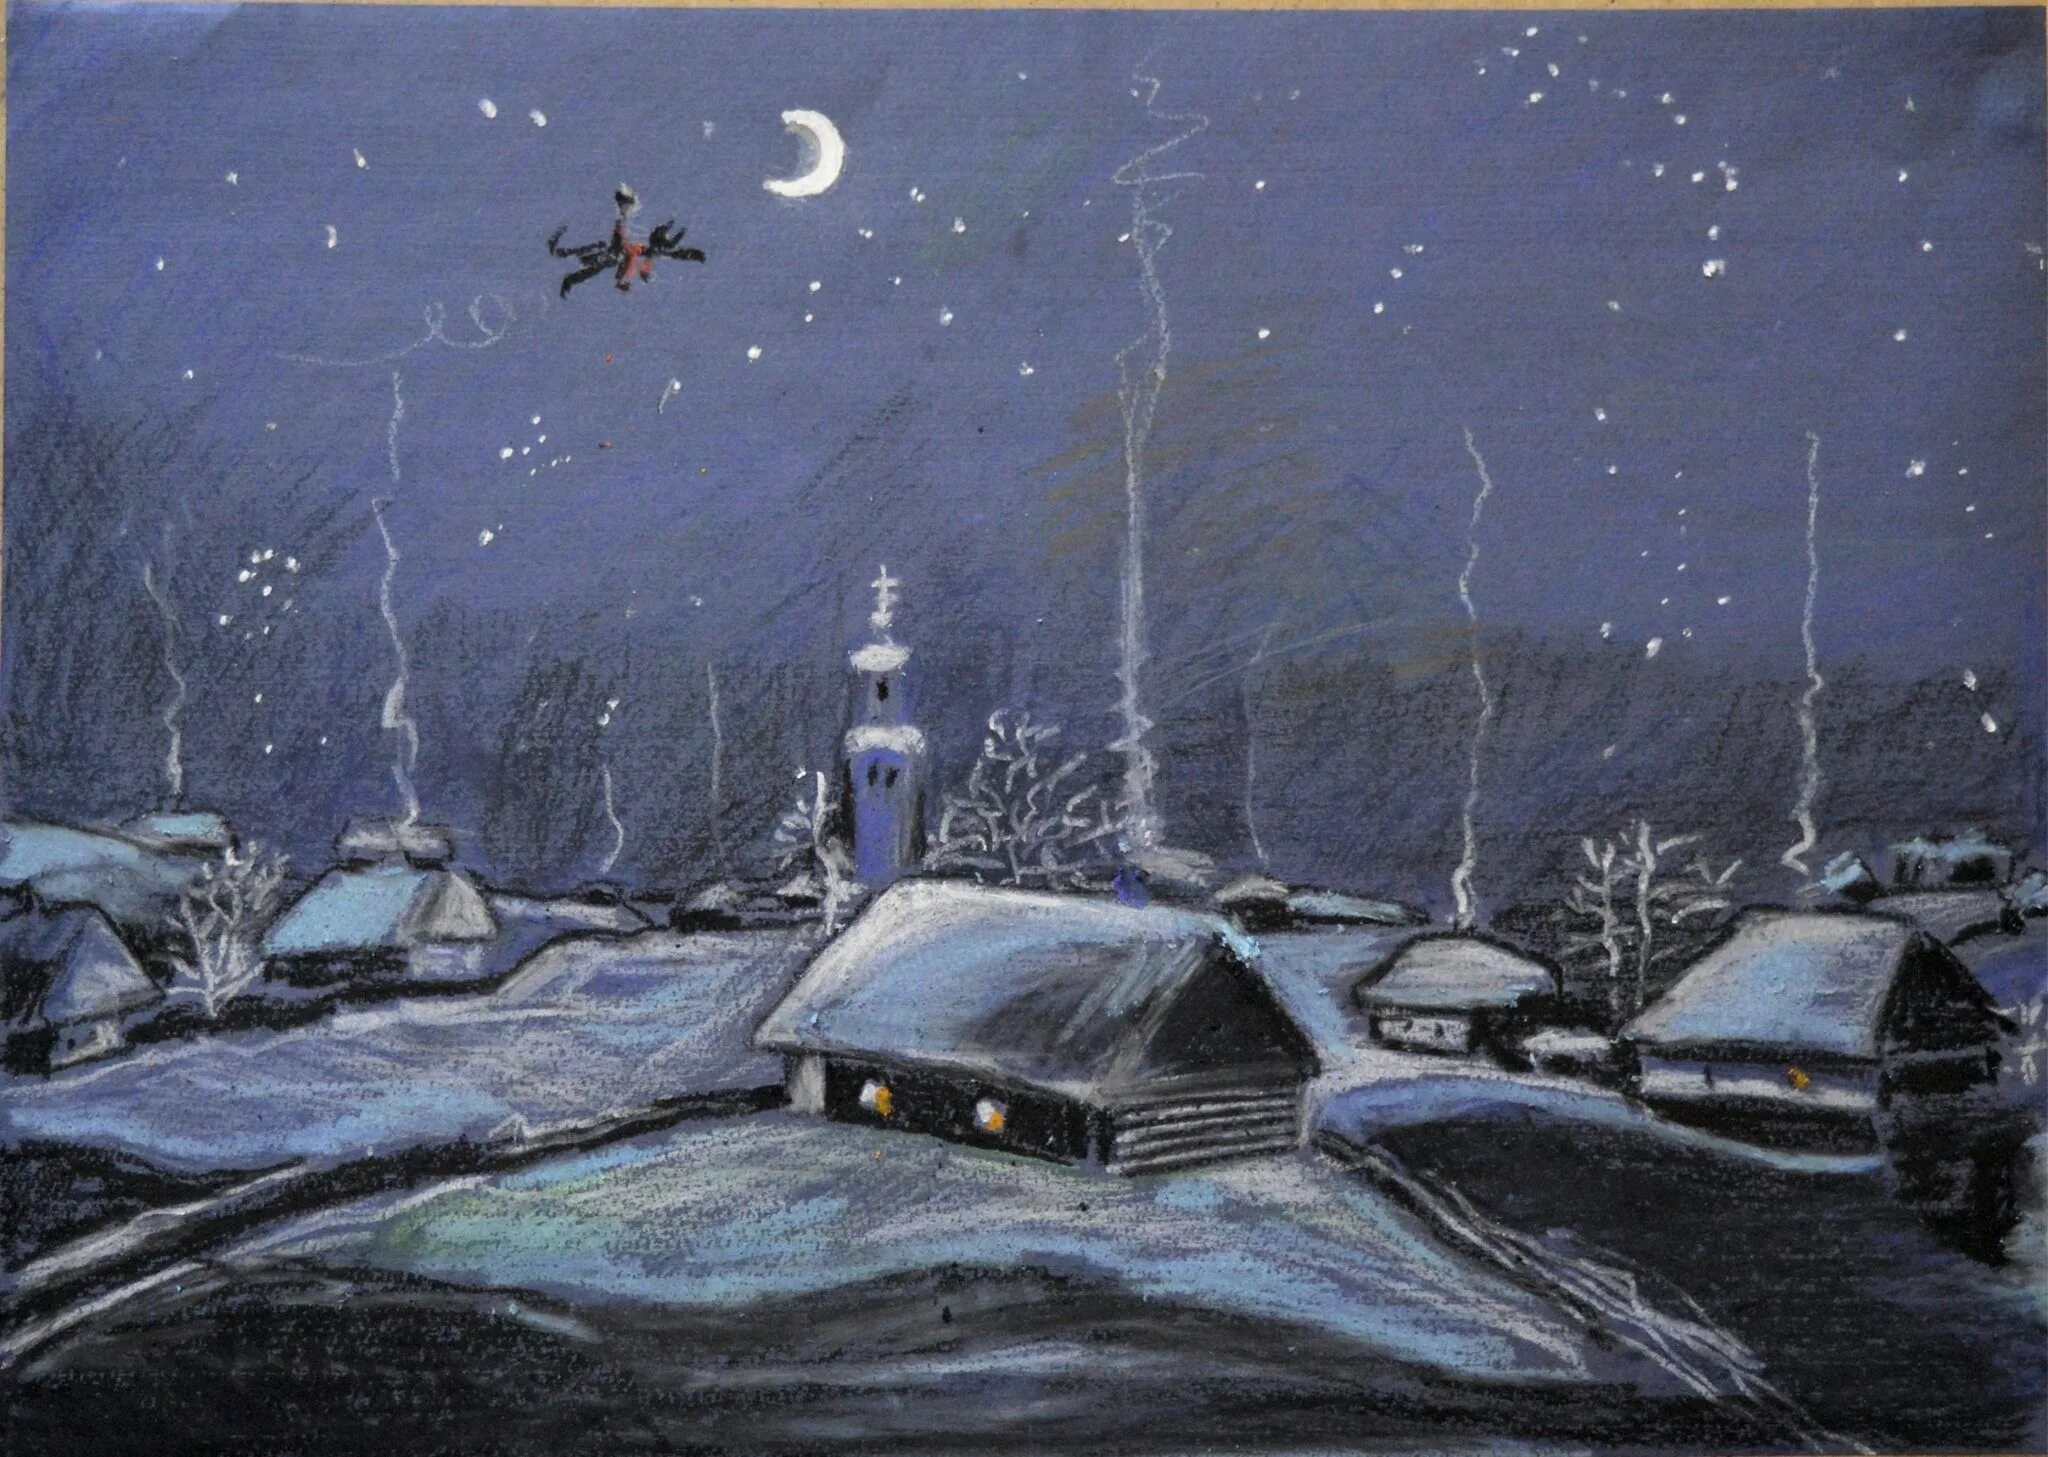 Месяц ночь перед рождеством. Картина зима ночь Хутор Диканька. Деревня Диканька в ночь перед Рождеством. Вечера на хуторе близ Диканьки деревня. Зимняя деревня вечера на хуторе близ Диканьки.